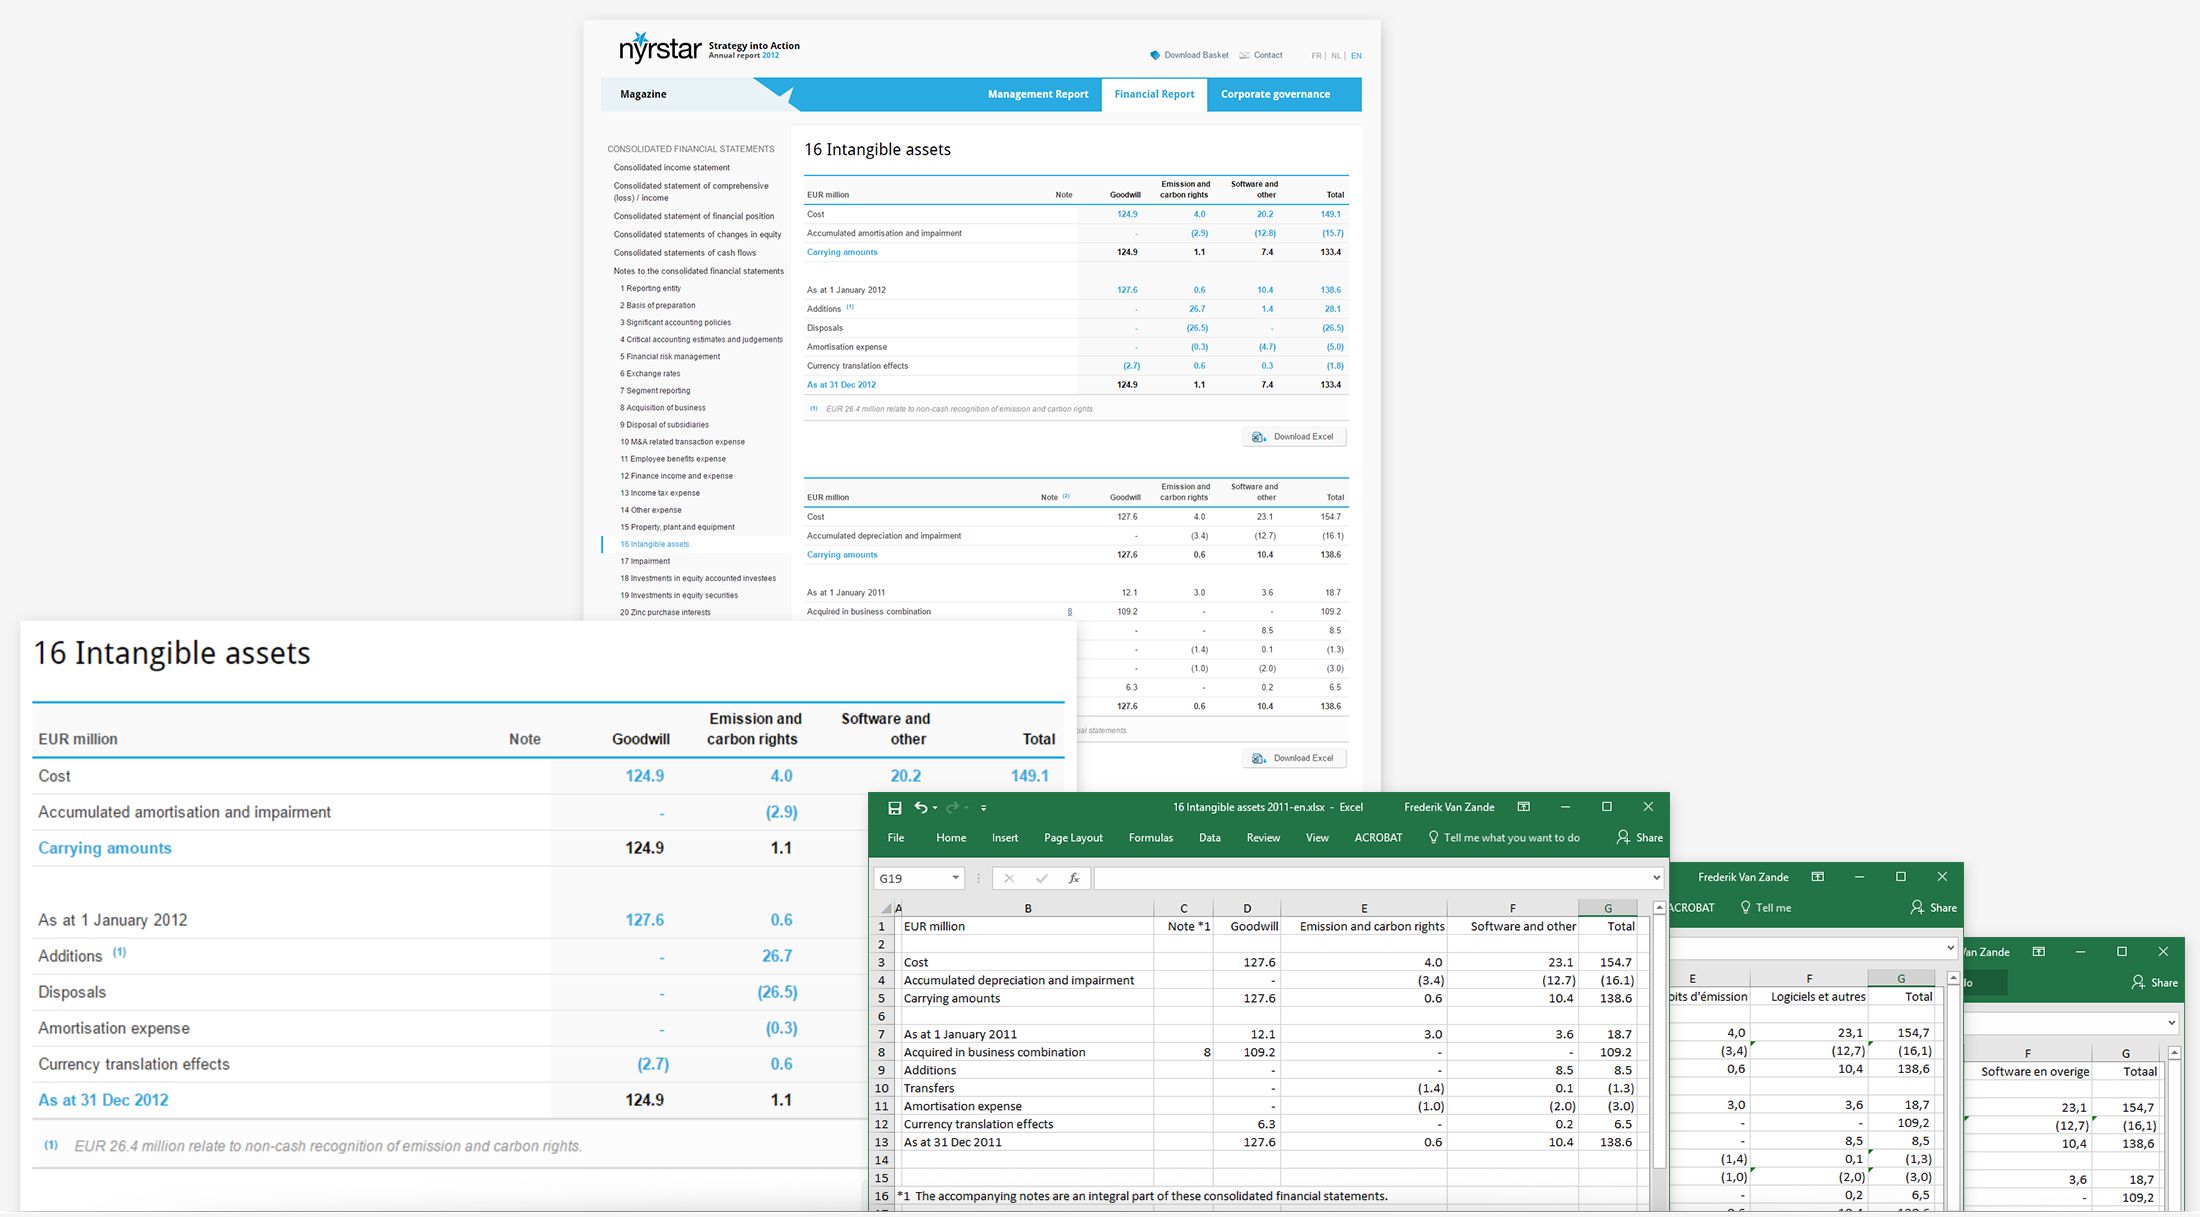 Nyrstar 2012 - Excel sheets